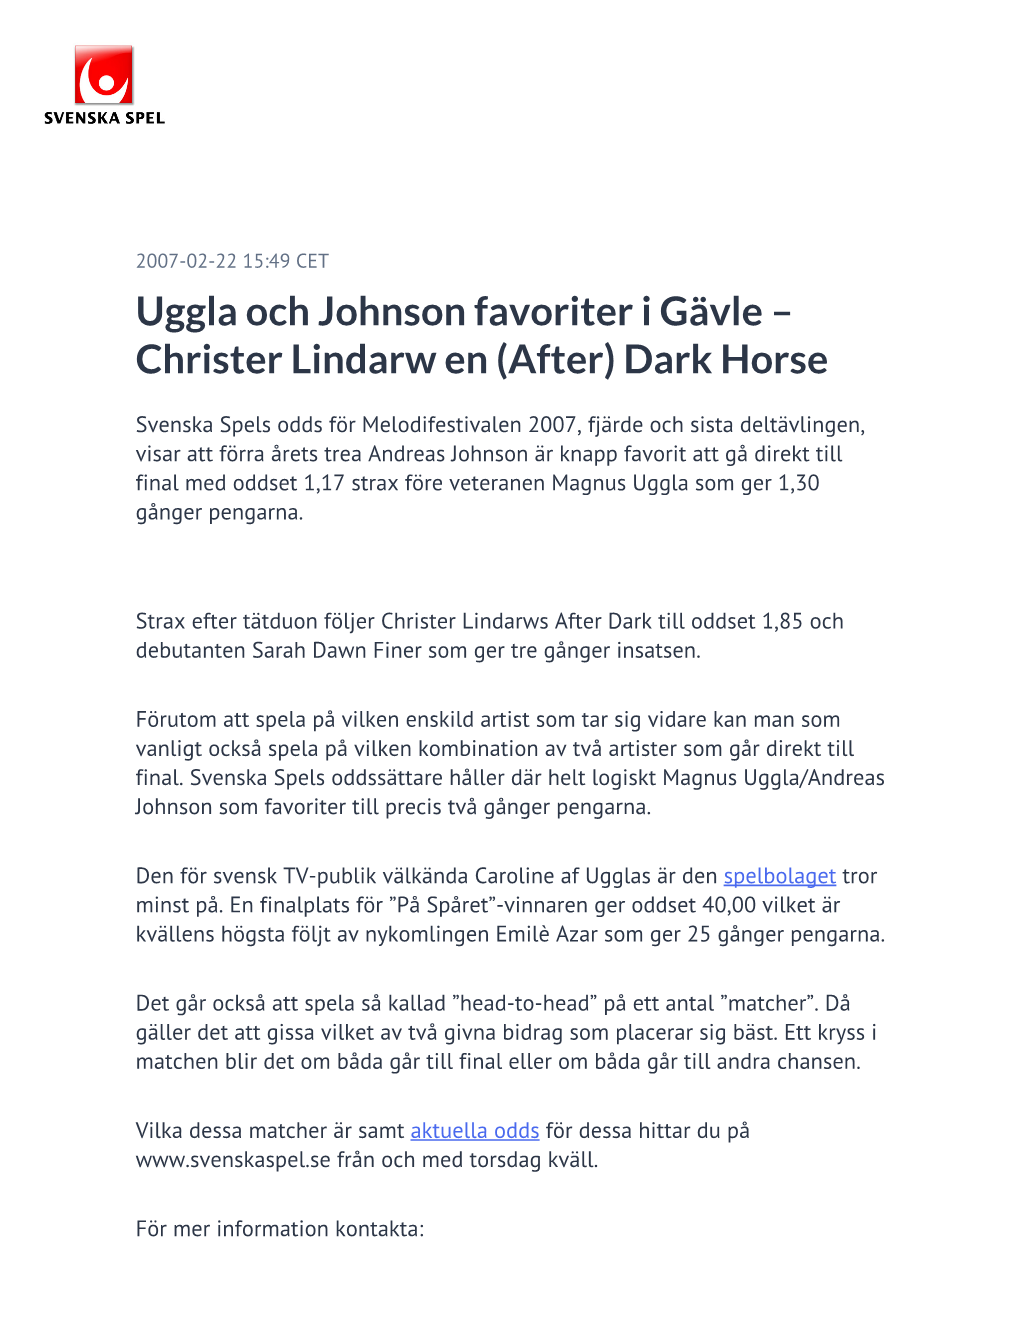 Uggla Och Johnson Favoriter I Gävle – Christer Lindarw En (After) Dark Horse